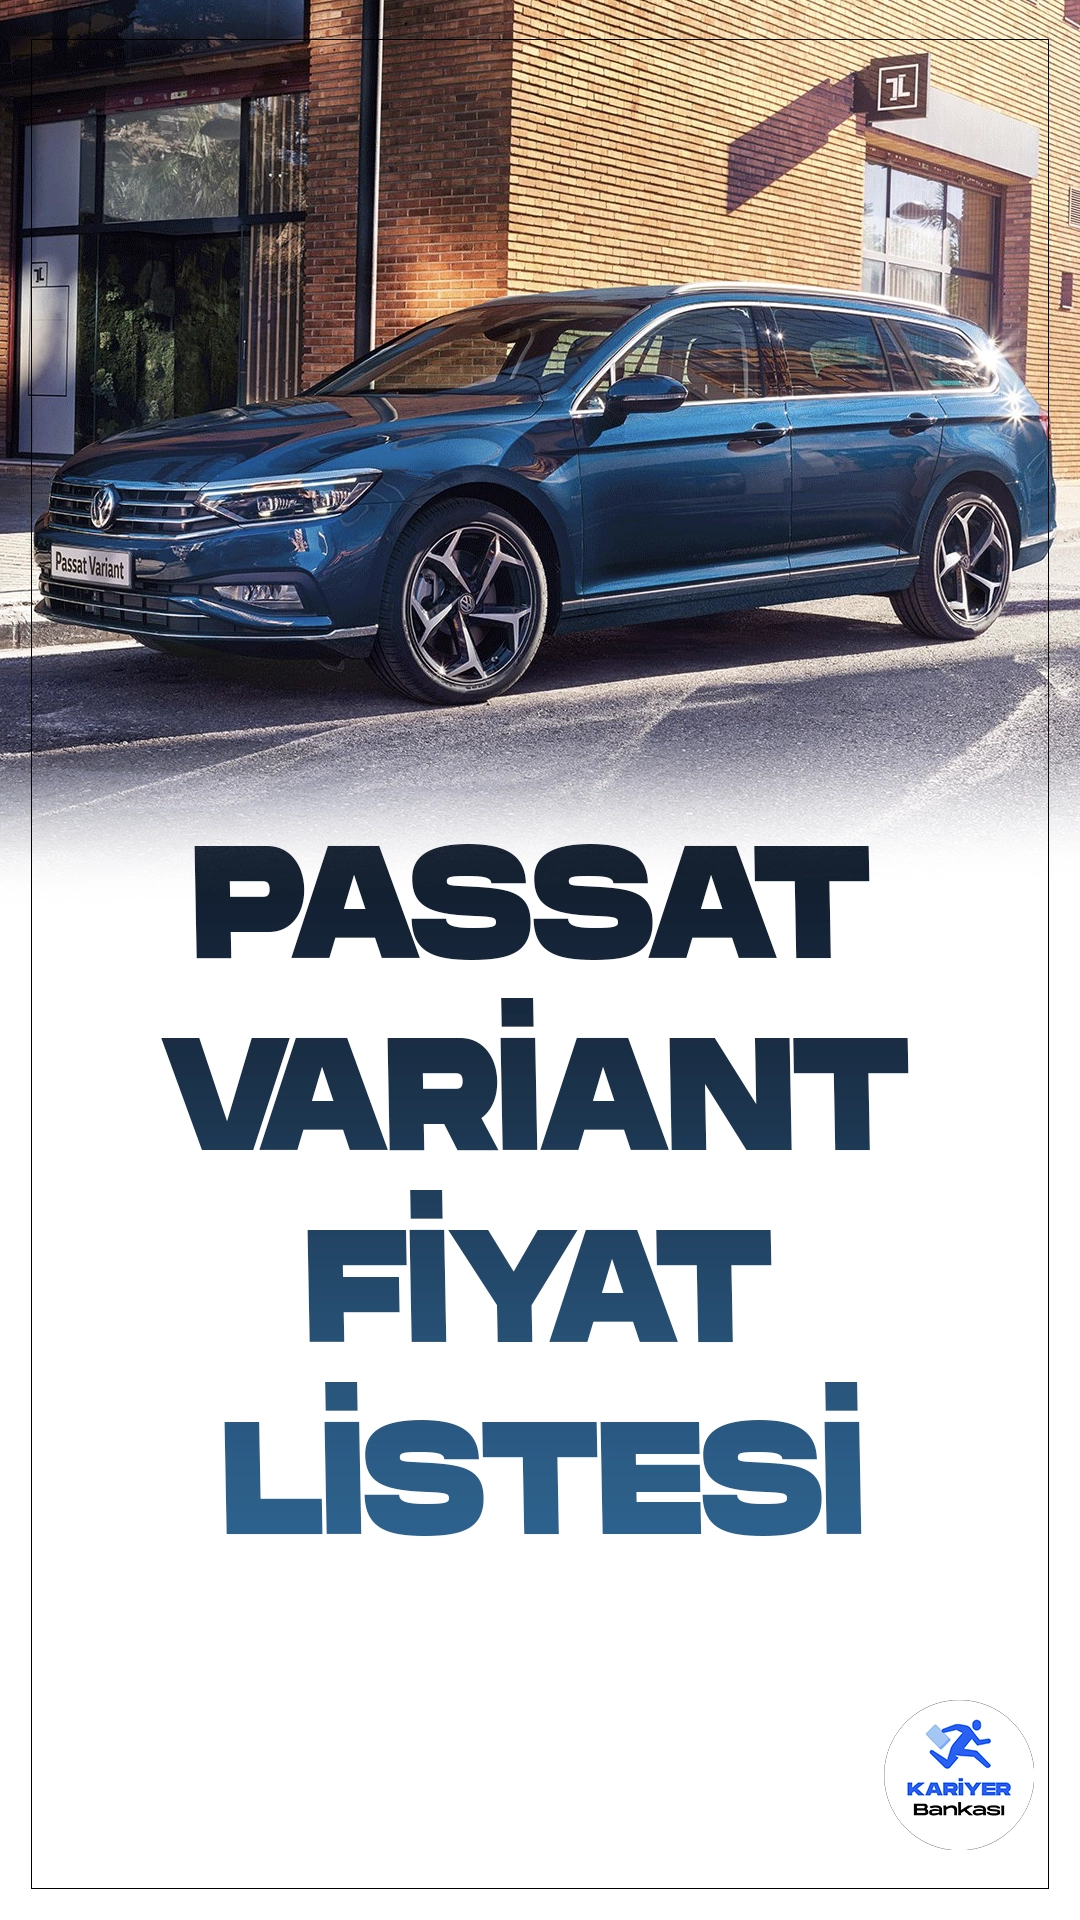 Passat Variant Aralık 2023 Fiyat Listesi Belli Oldu!Volkswagen Passat Variant, Alman otomotiv devi Volkswagen tarafından üretilen ve geniş iç hacmi, şık tasarımı ve üstün performansıyla öne çıkan bir araç modelidir. Yenilikçi teknolojik özellikleri ve güvenlik donanımlarıyla donatılan Passat Variant, sürücü ve yolcularına konforlu bir sürüş deneyimi sunmaktadır.